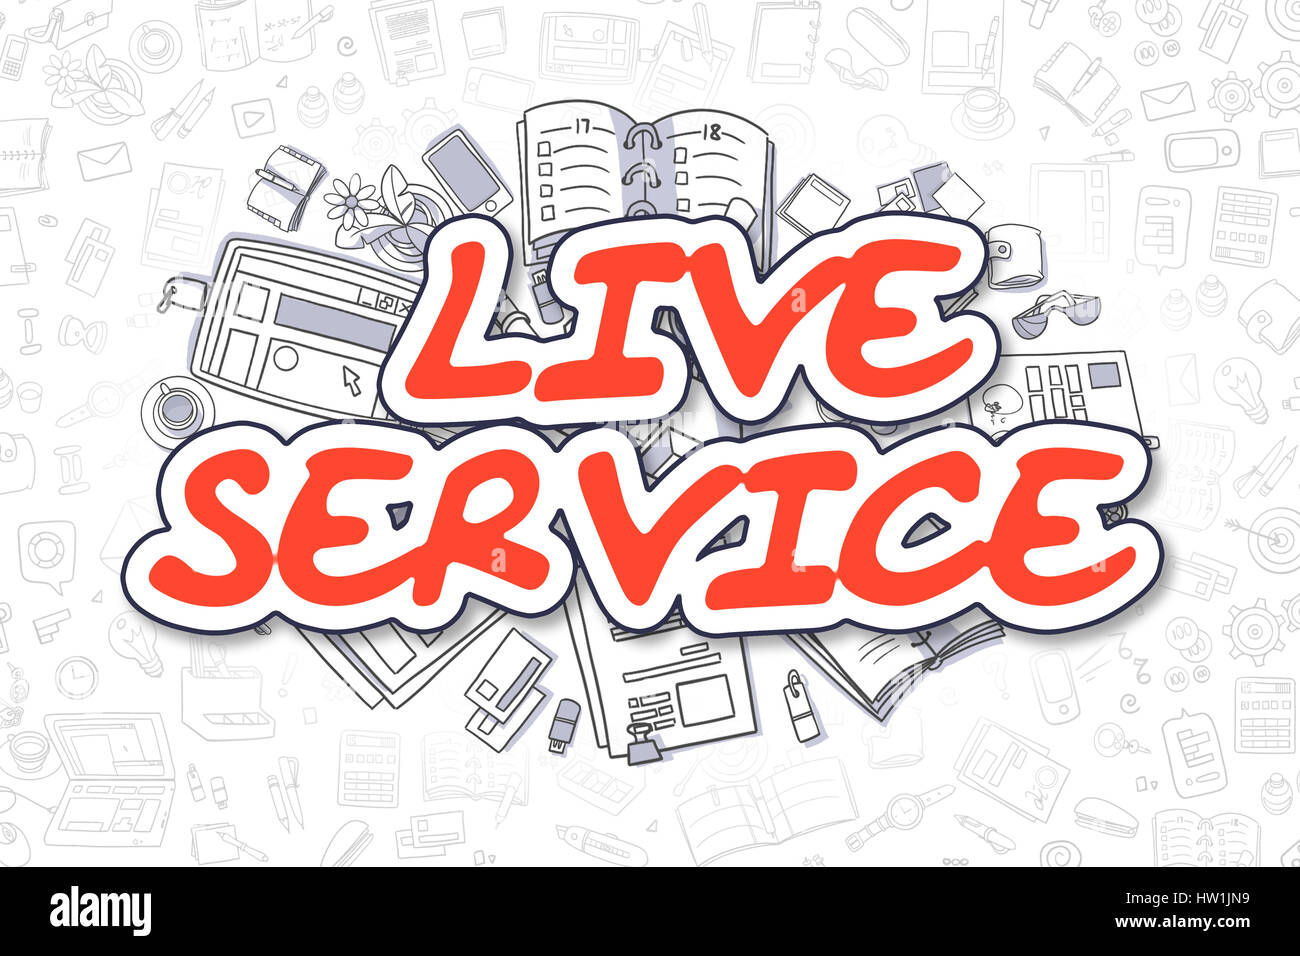 Servicio Live - Doodle texto rojo. Concepto de negocio. Foto de stock